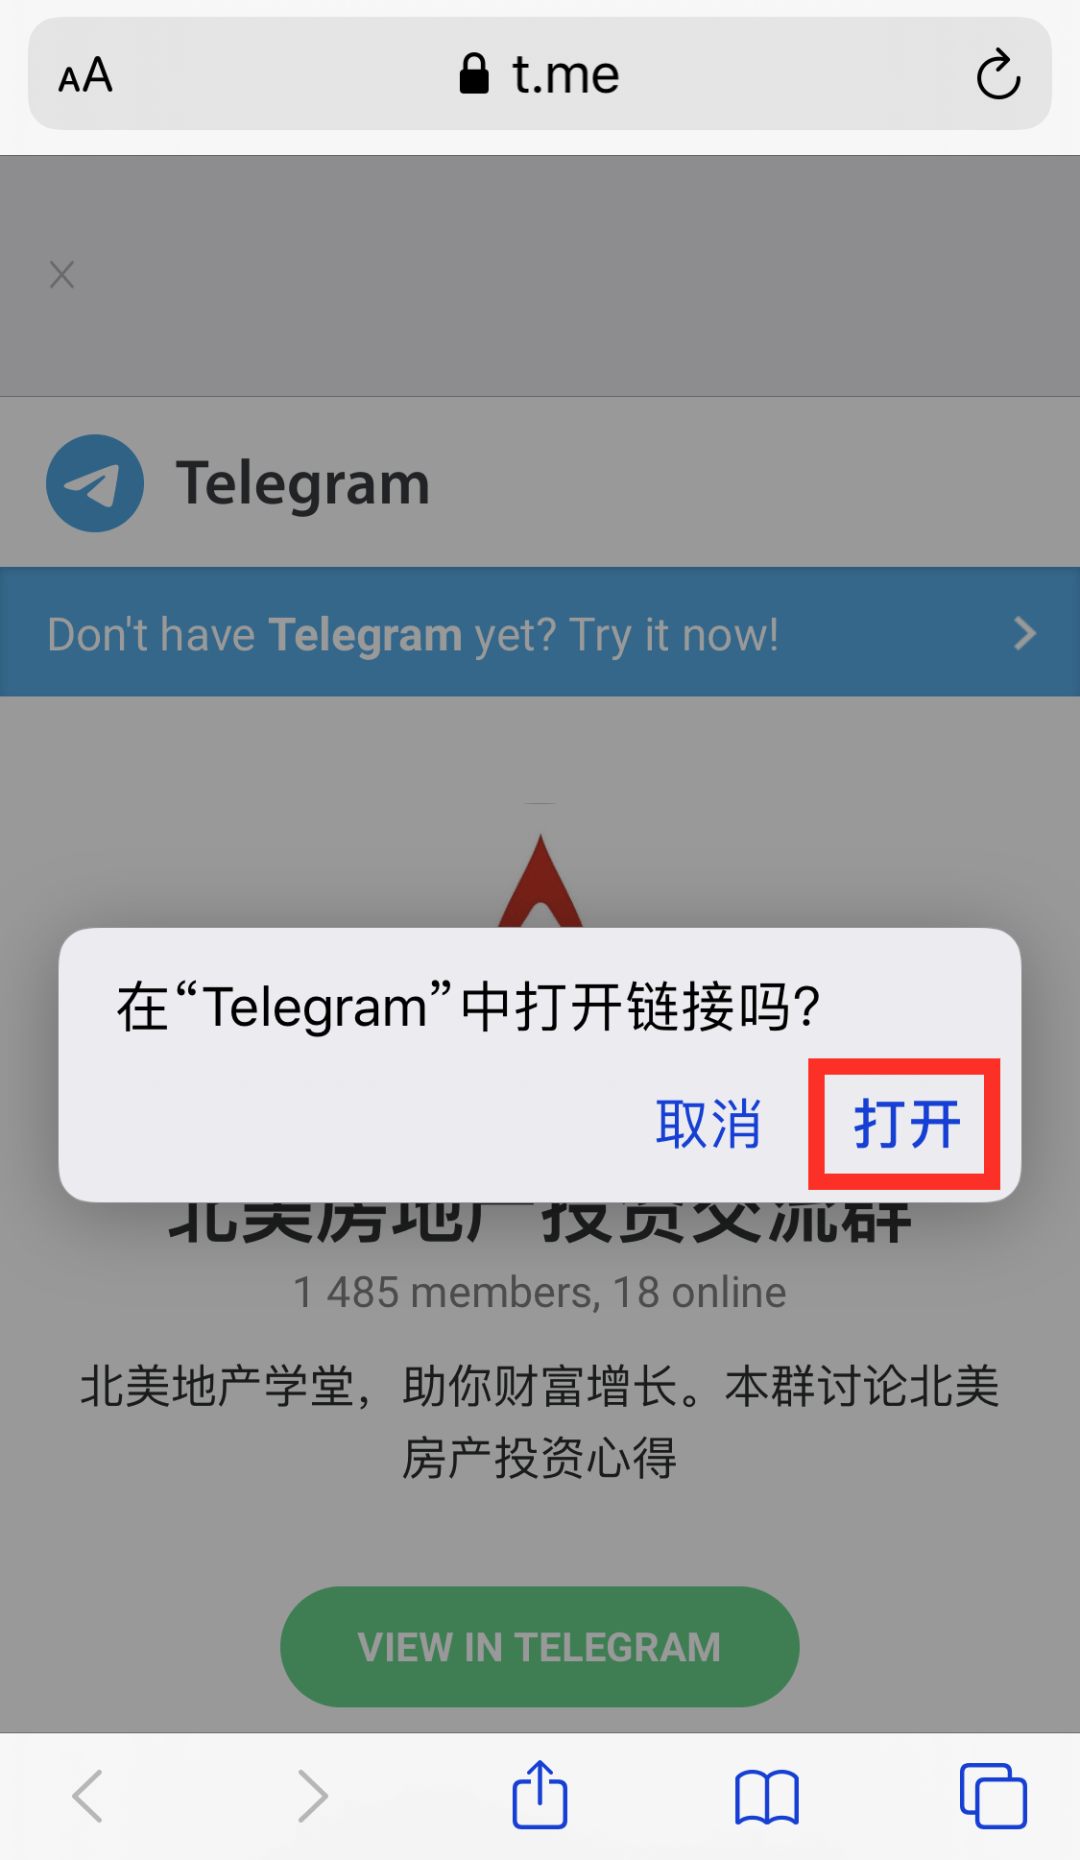 关于telegram可以用来干嘛的信息